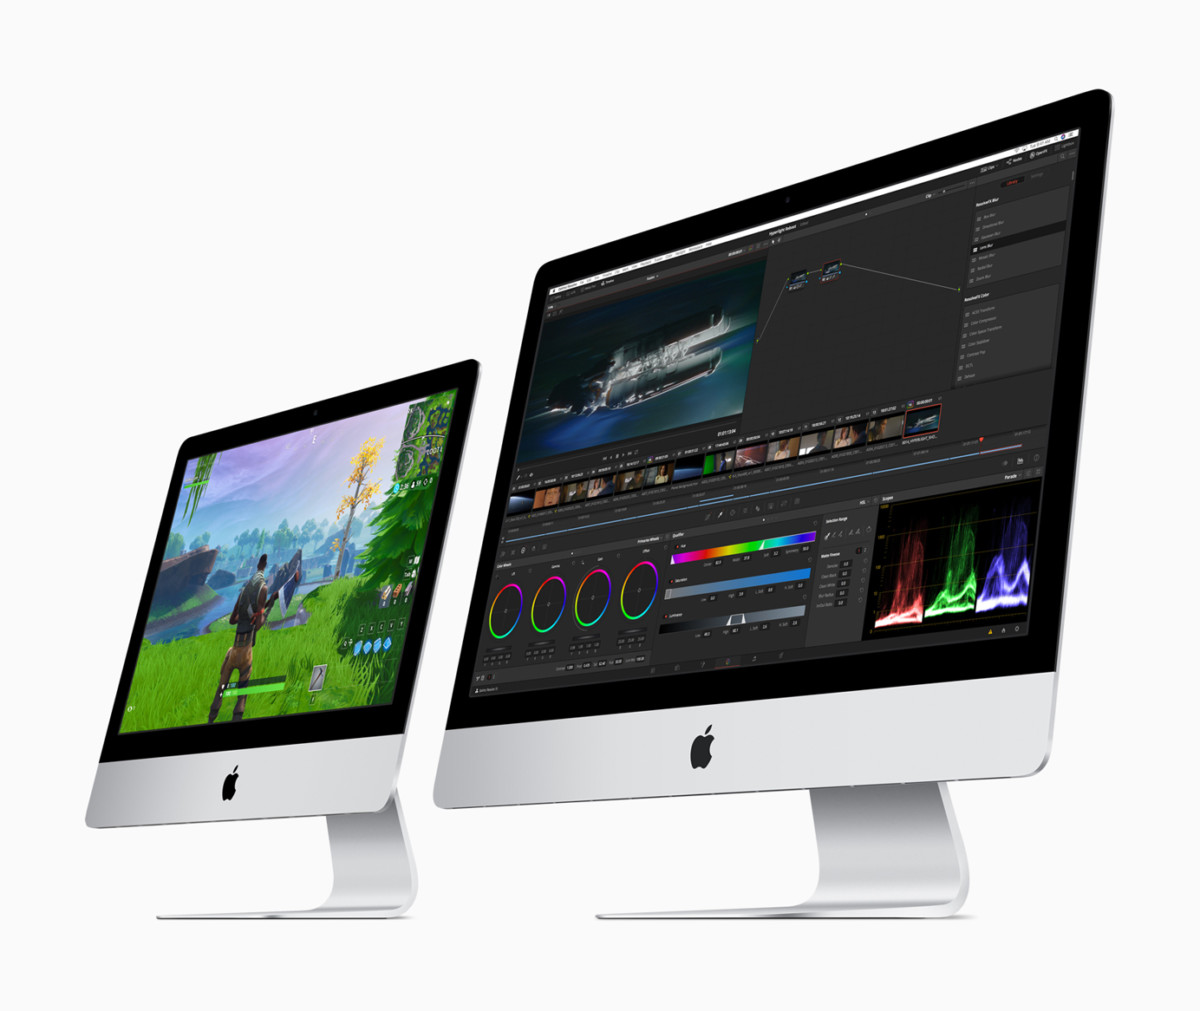 WWDC 2020 : Apple pourrait dévoiler un iMac new look avec SSD et GPU AMD